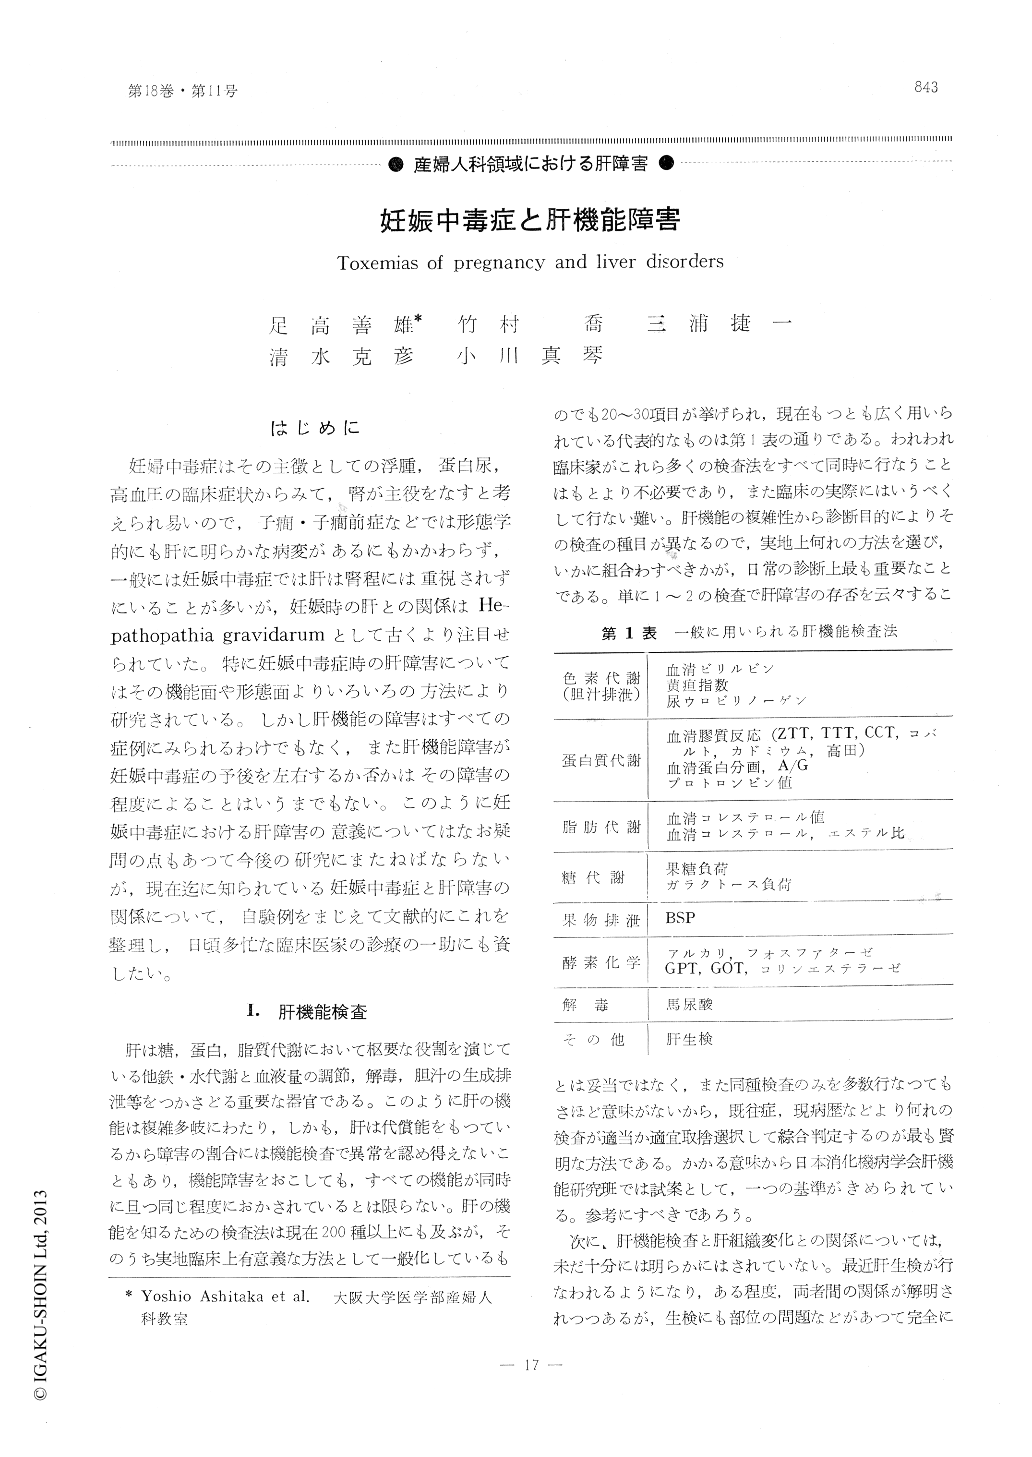 妊娠中毒症と肝機能障害 (臨床婦人科産科 18巻11号) | 医書.jp